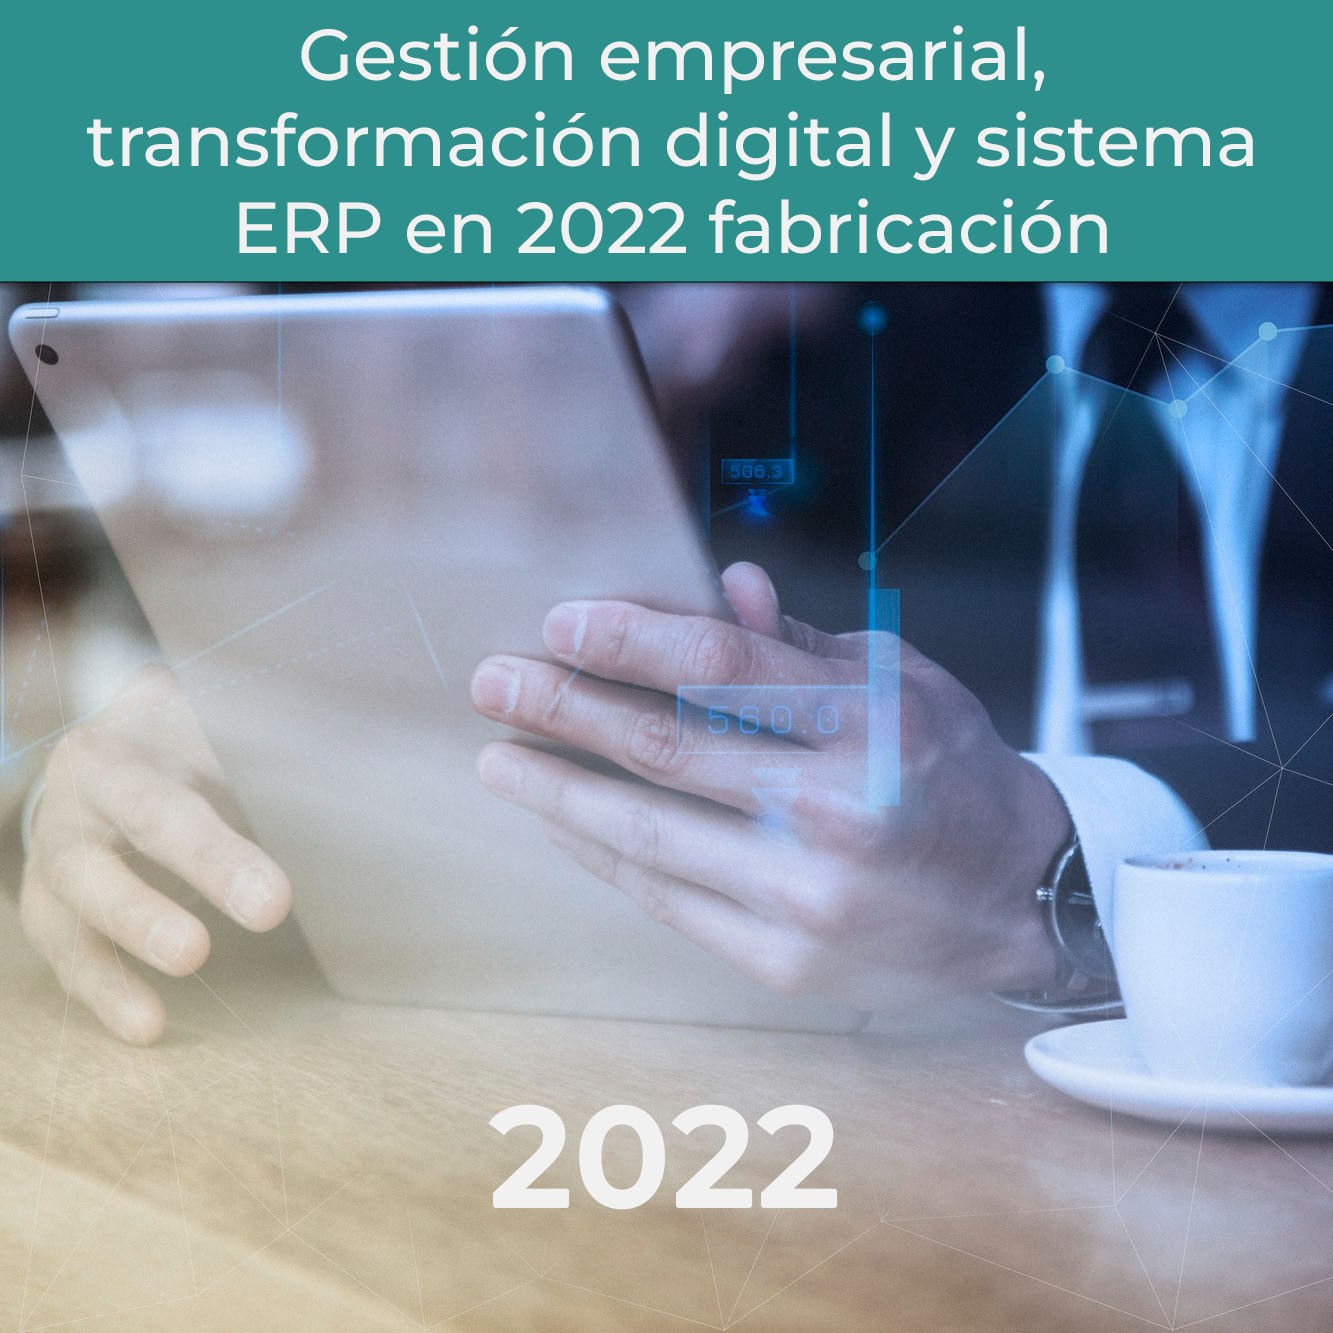 Título del artículo: Gestión empresarial, transformación digital y sistema ERP en 2022 fabricación